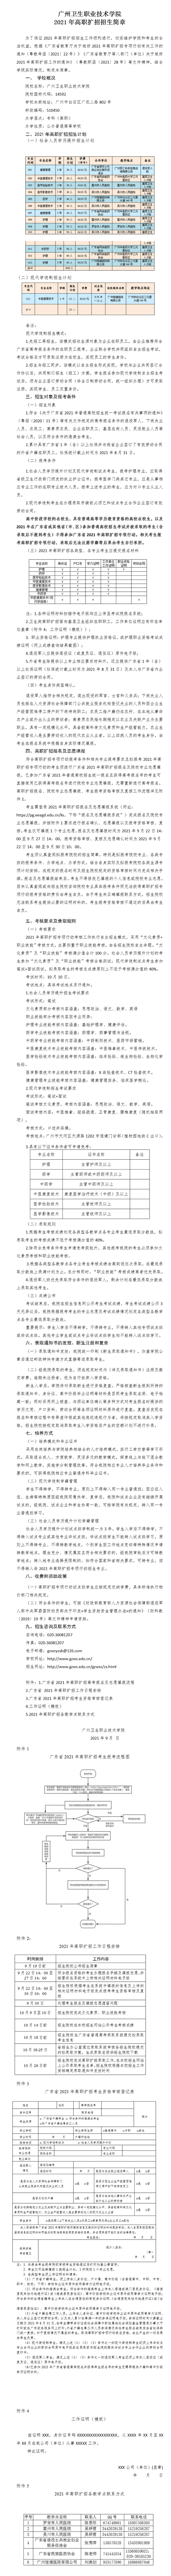 2021年广州卫生职业技术学院高职扩招招生简章